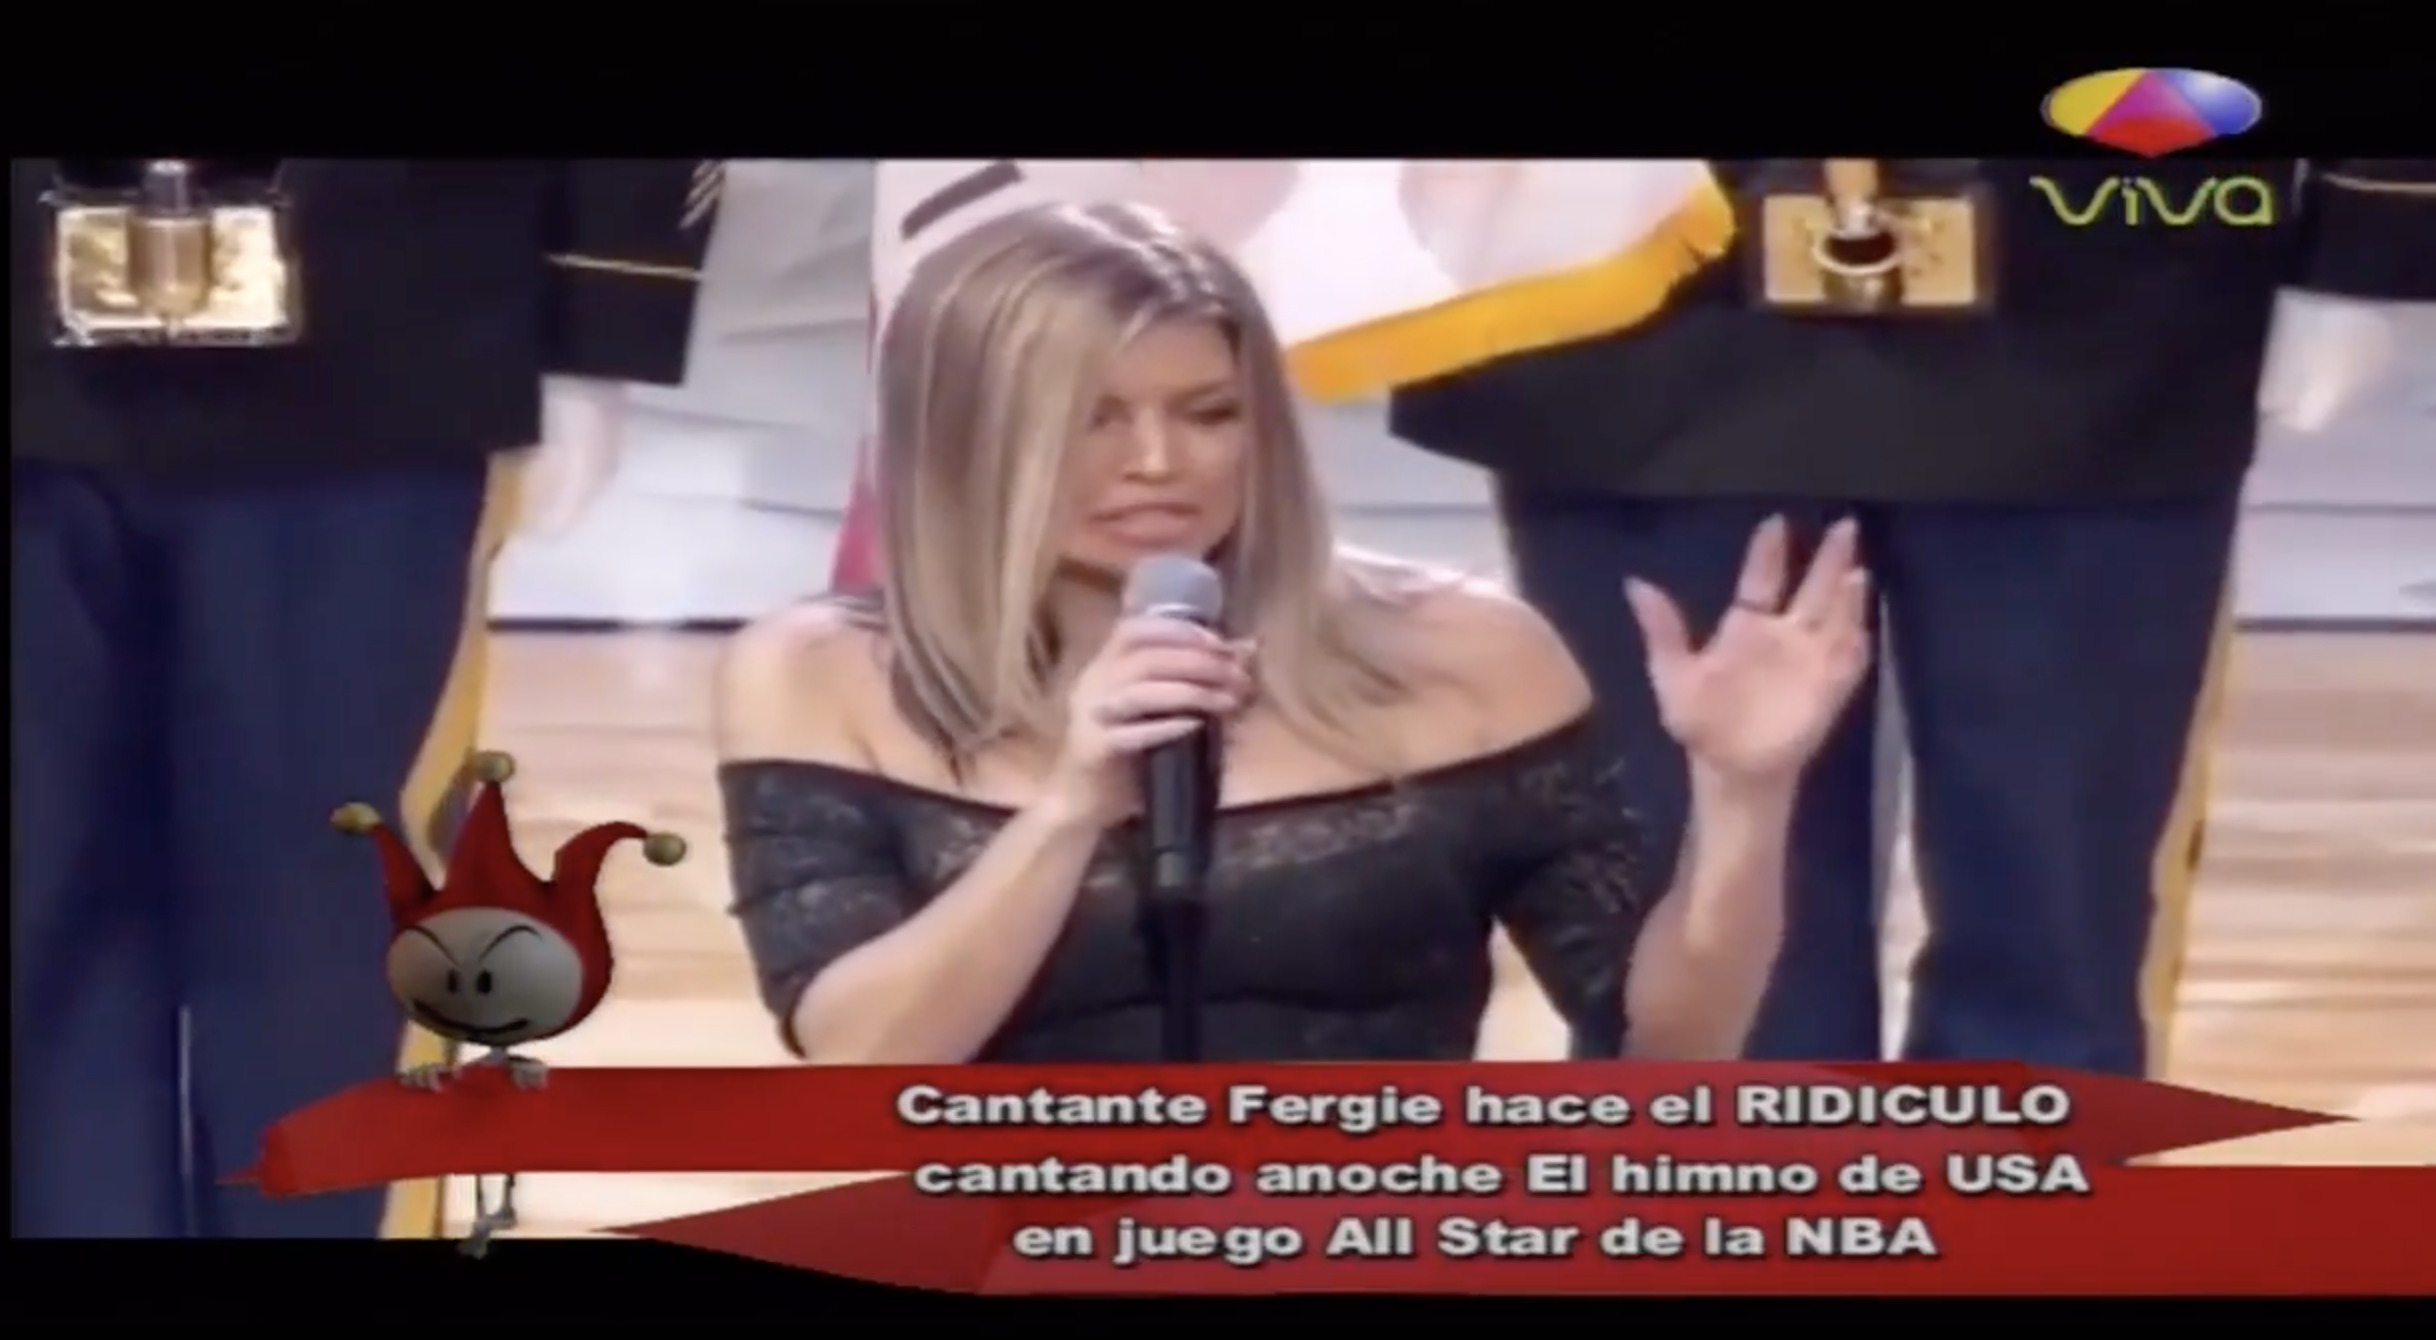 Cantante Fergie Hace El Ridículo Cantando El Himno De USA En Juego De NBA